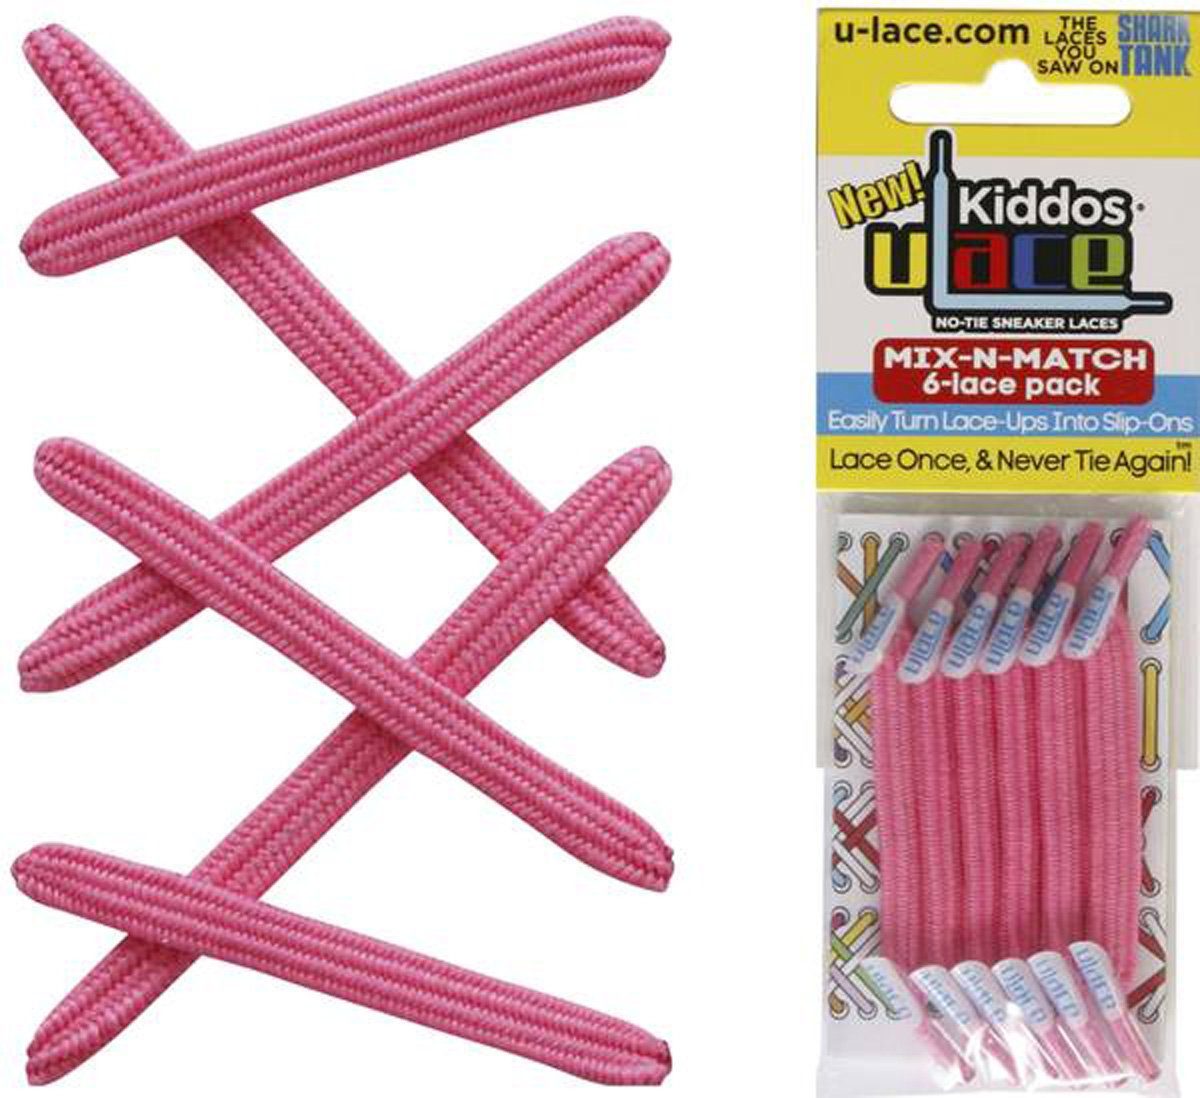 U-Laces Schnürsenkel Kiddos mit für Kinder Pink Shocking Schnürsenkel Wiederhaken - elastische